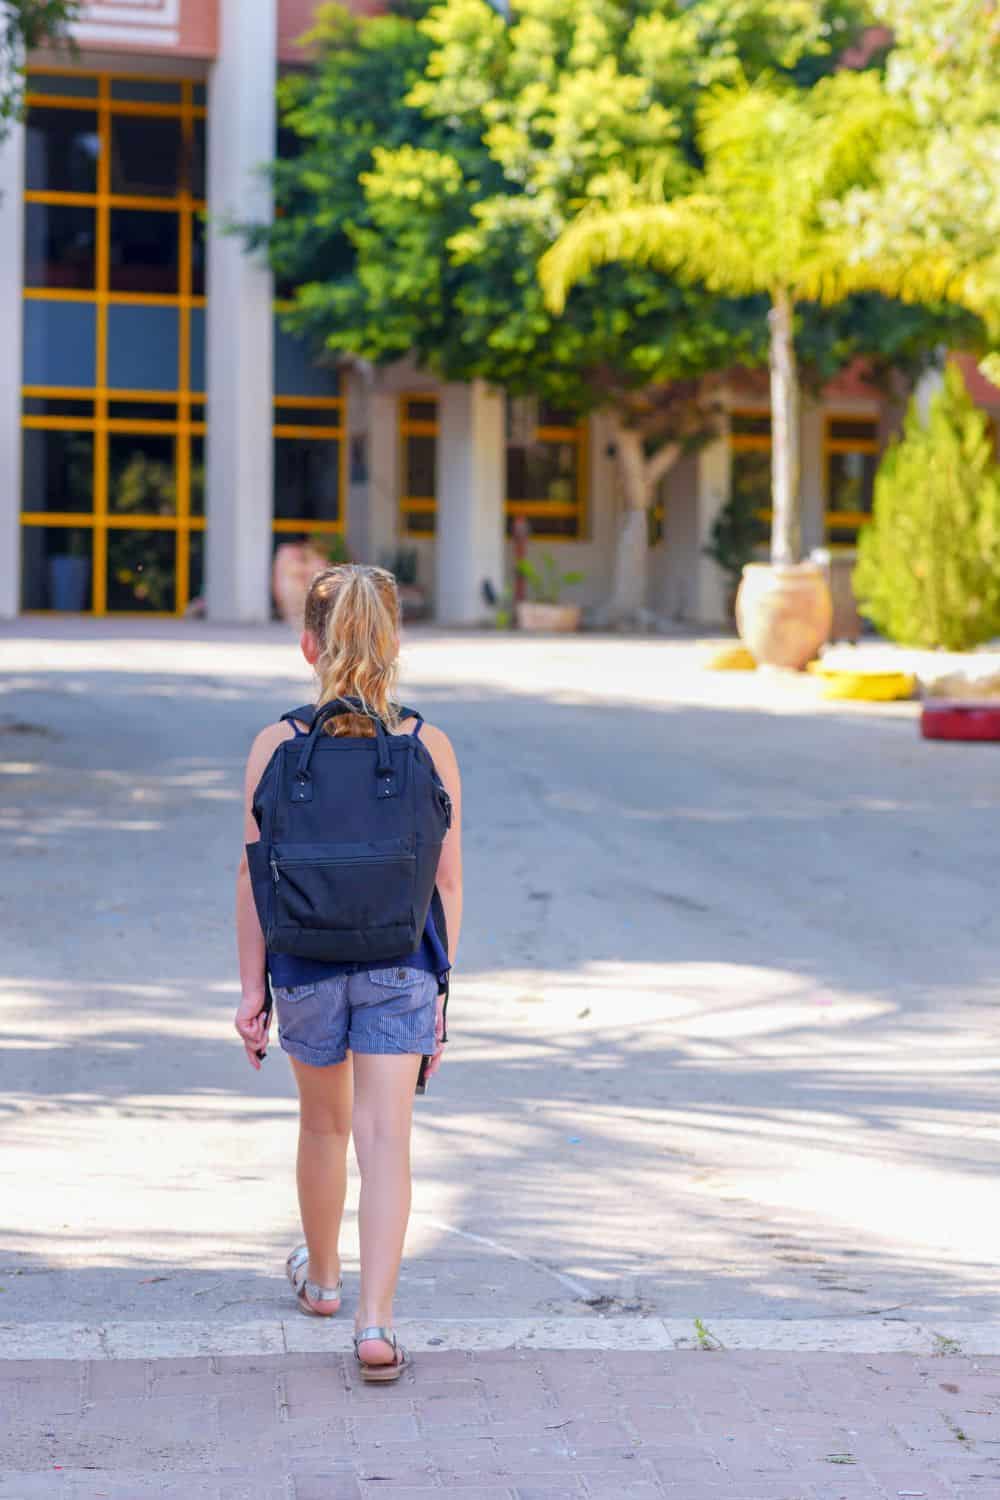 Teenage girl walking into school ground.